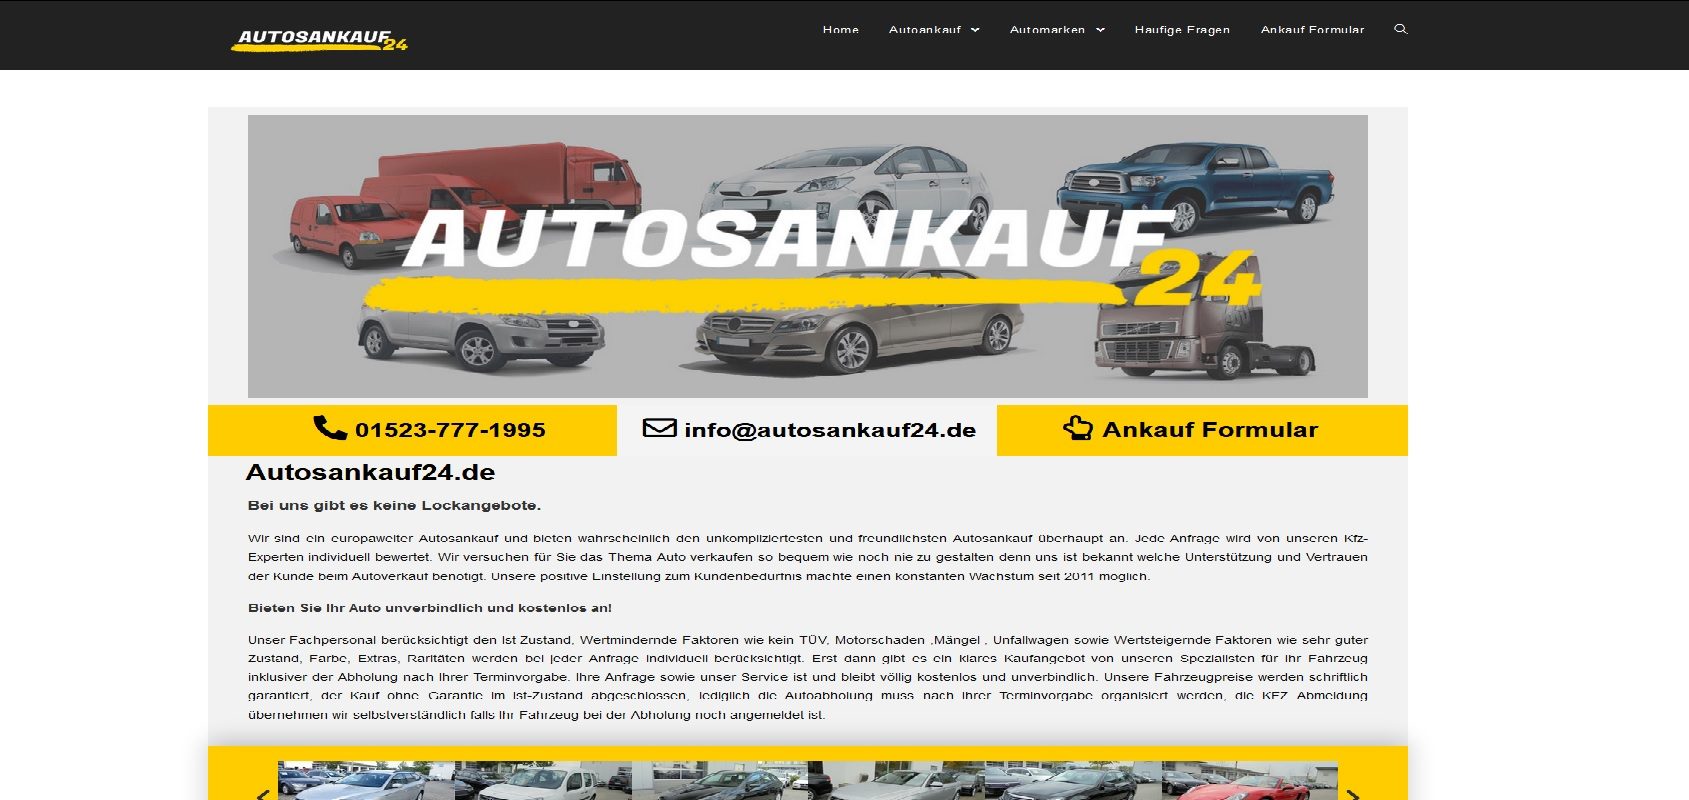 Autosankauf24.de ihr bundesweite Fahrzeug Ankauf zu Top Preise